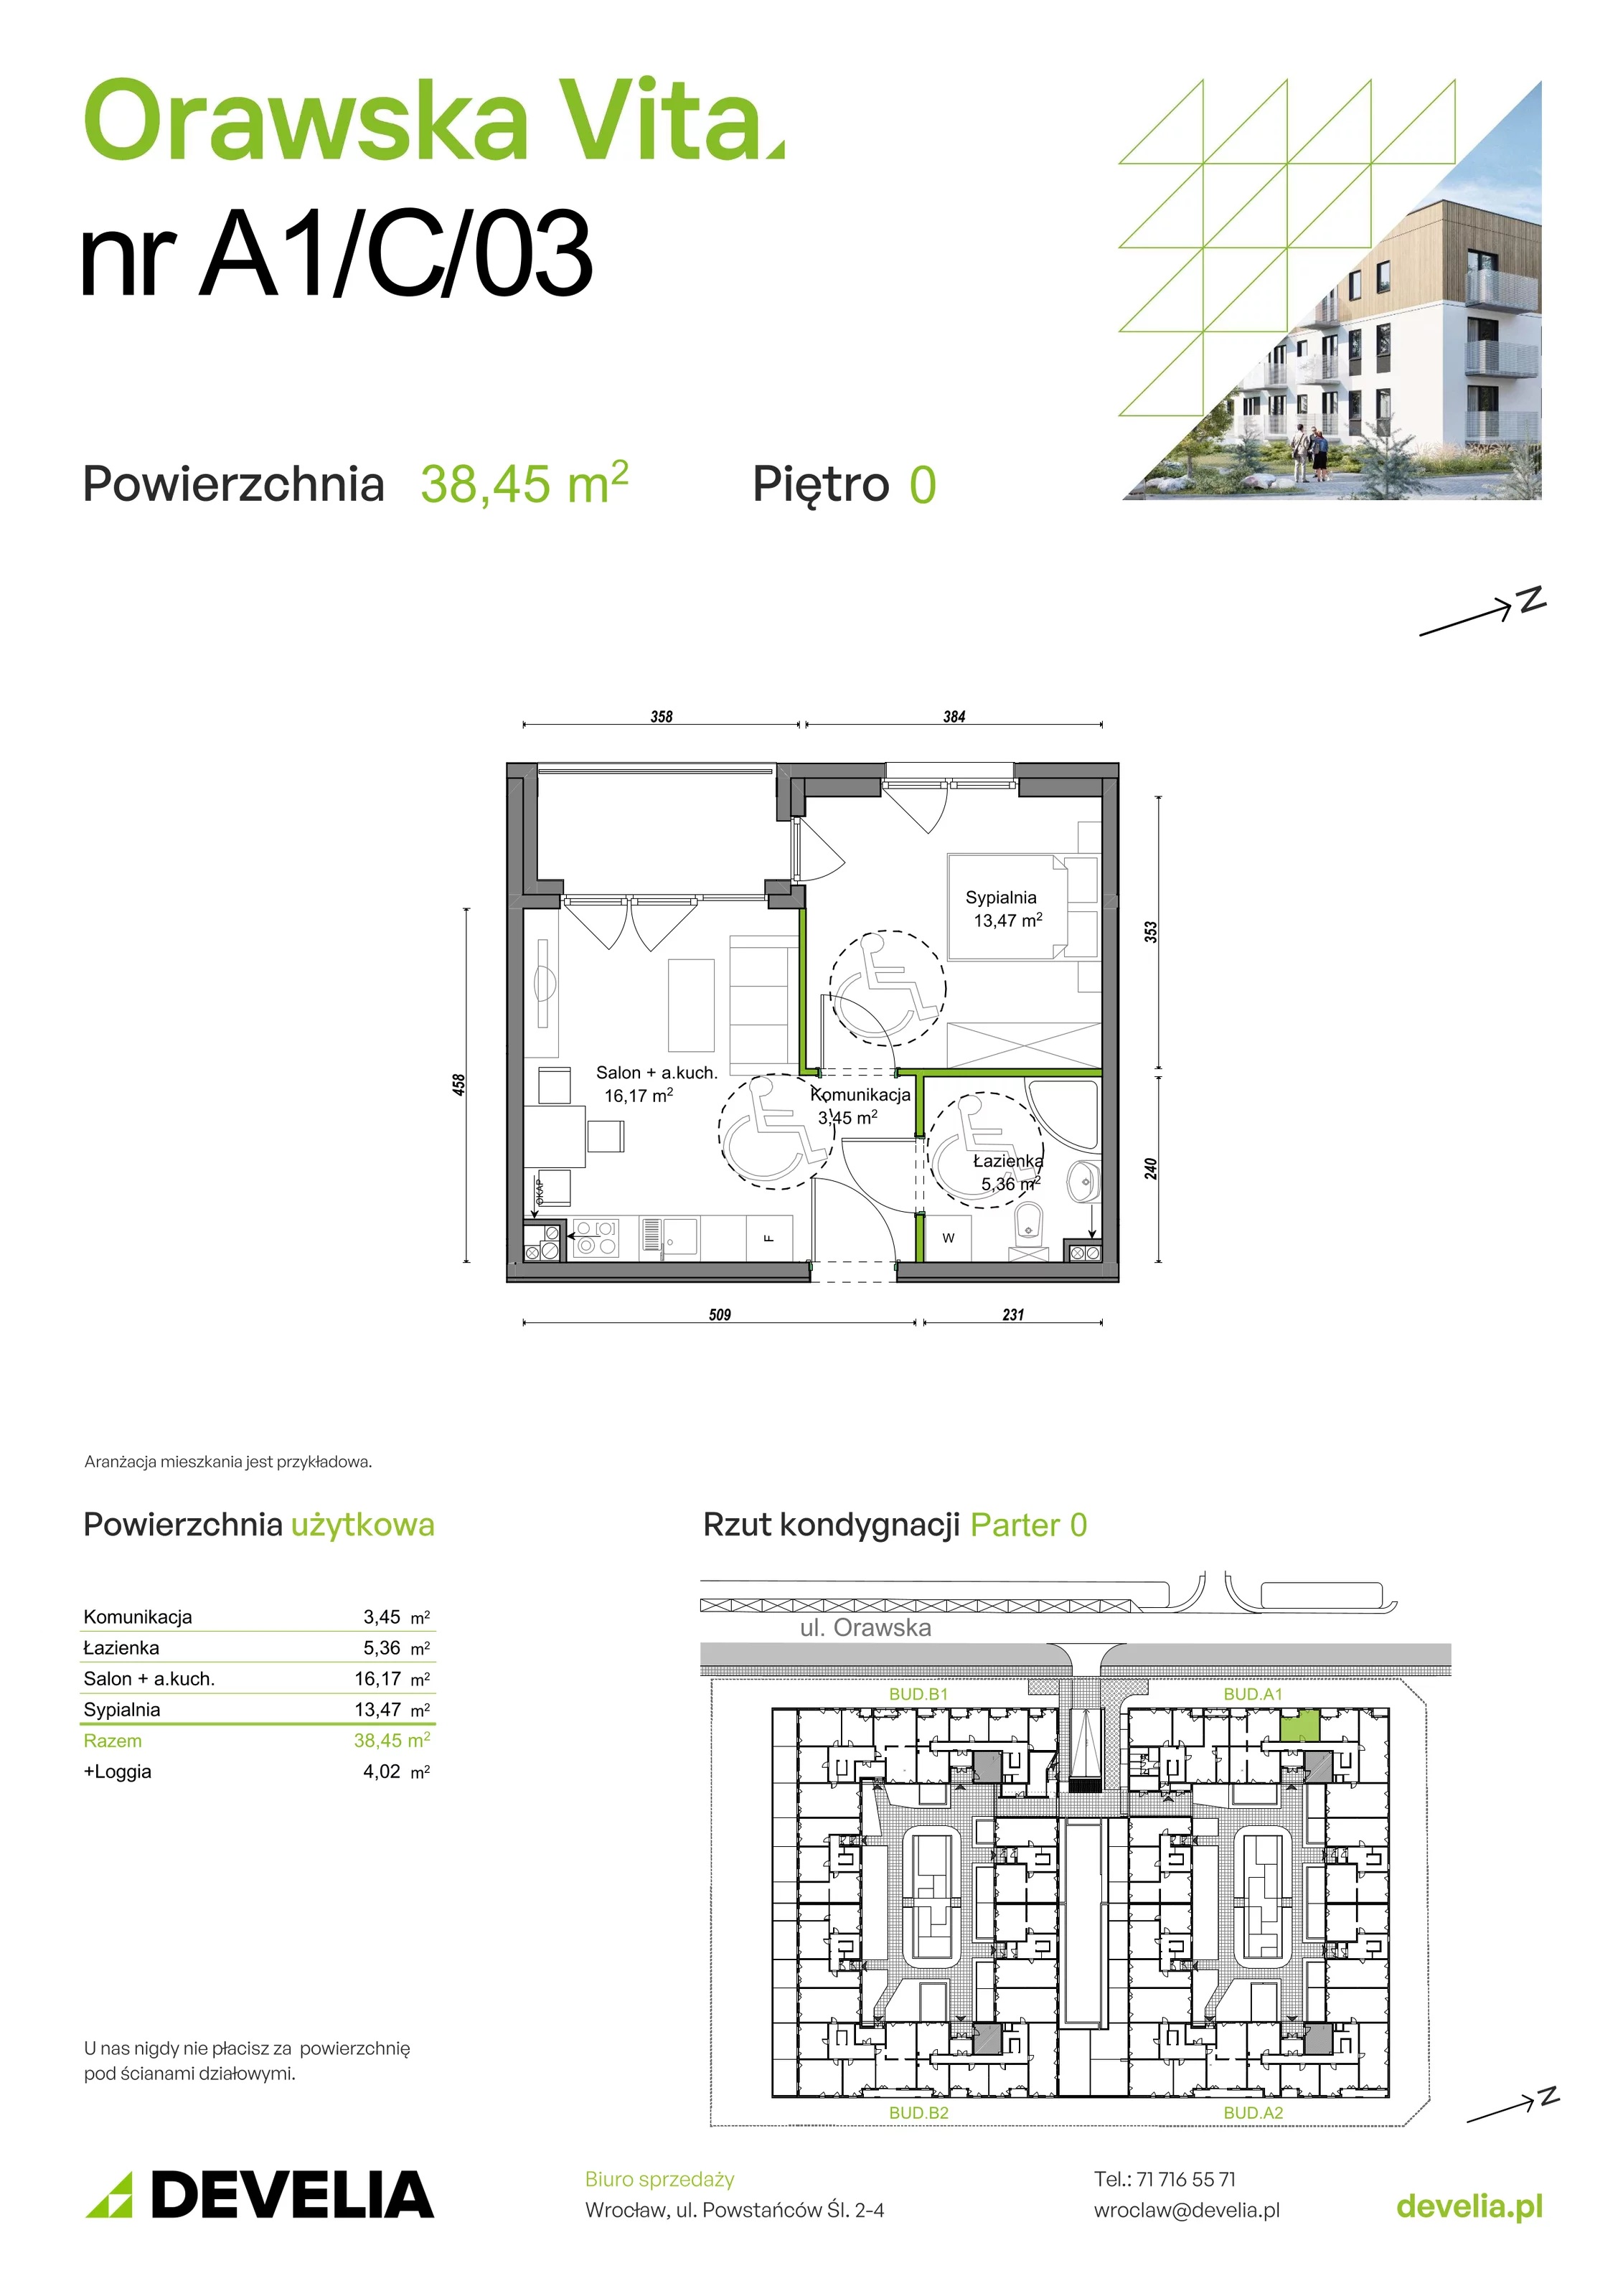 Mieszkanie 38,45 m², parter, oferta nr A1/C/03, Orawska Vita, Wrocław, Ołtaszyn, Krzyki, ul. Orawska 73